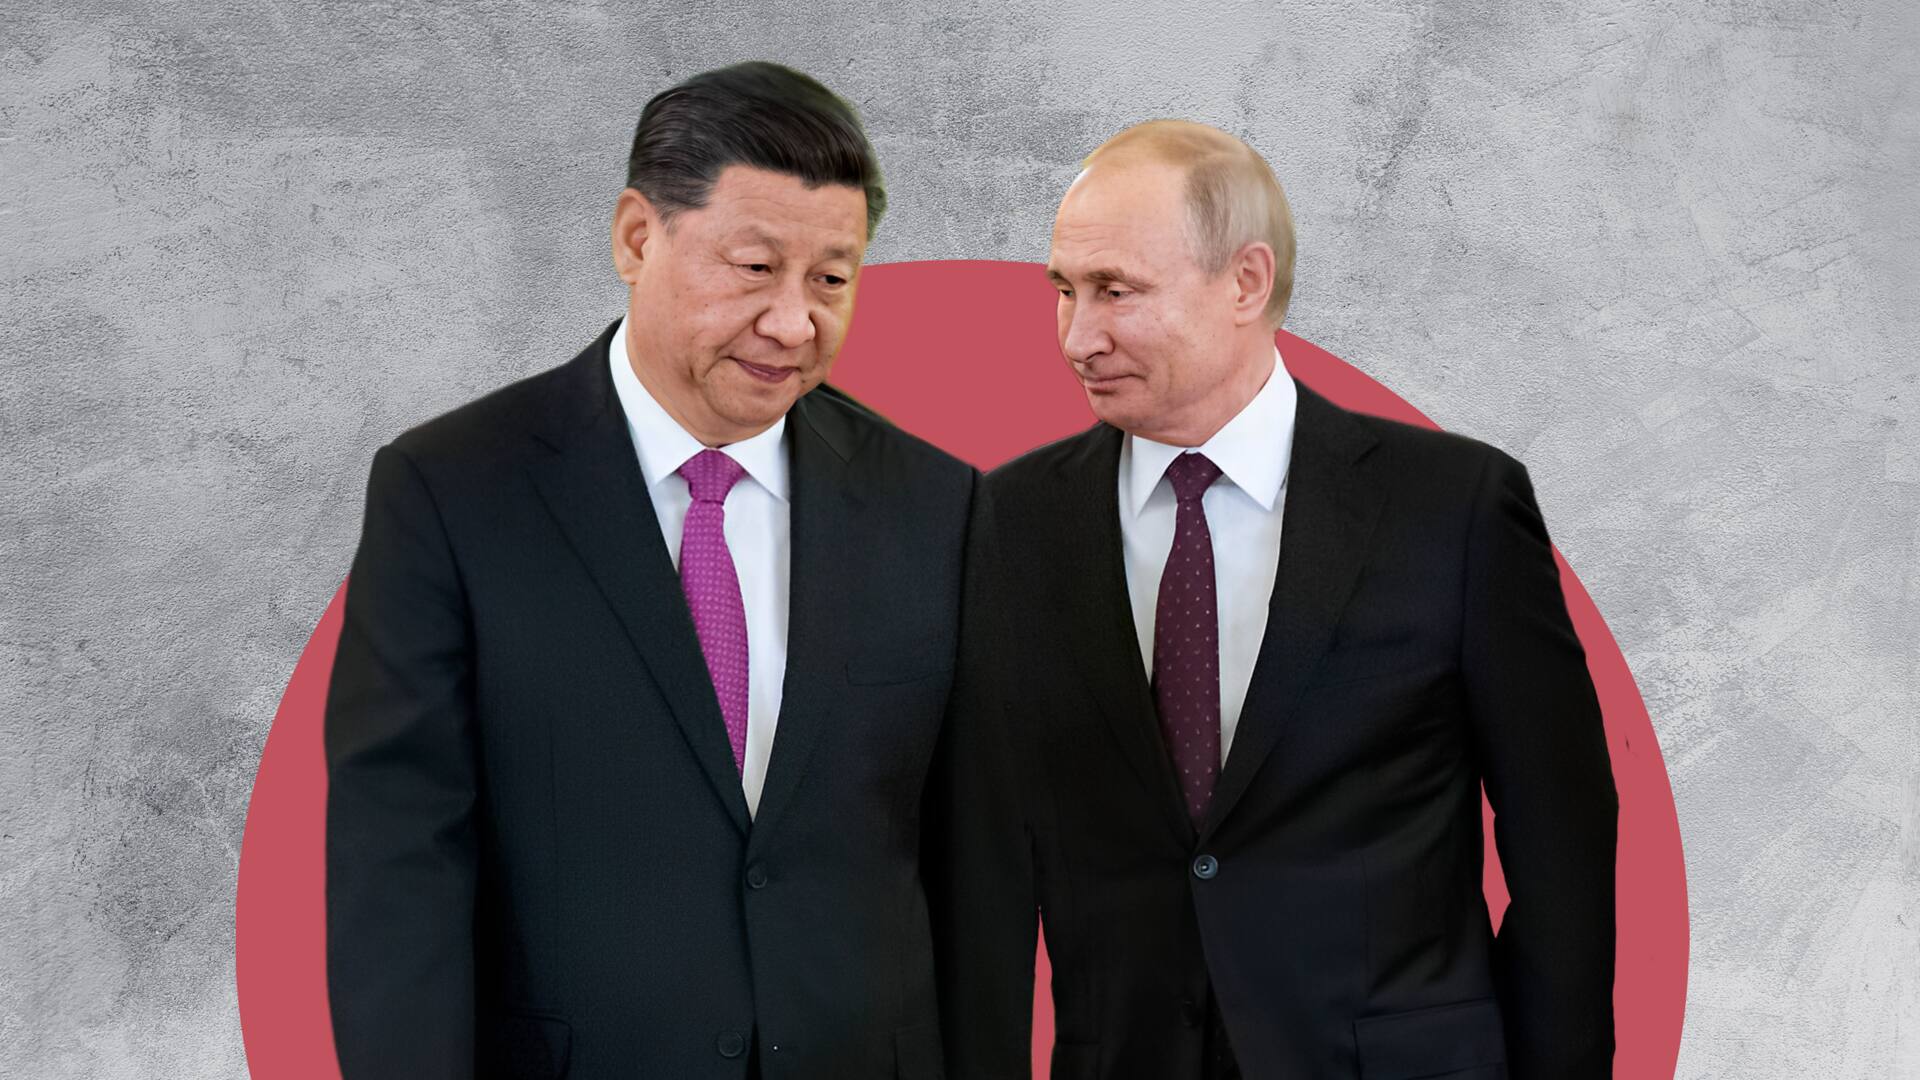 रूसी राष्ट्रपति पुतिन अक्टूबर में चीन जाएंगे, गिरफ्तारी वारंट जारी होने के बाद पहली विदेश यात्रा